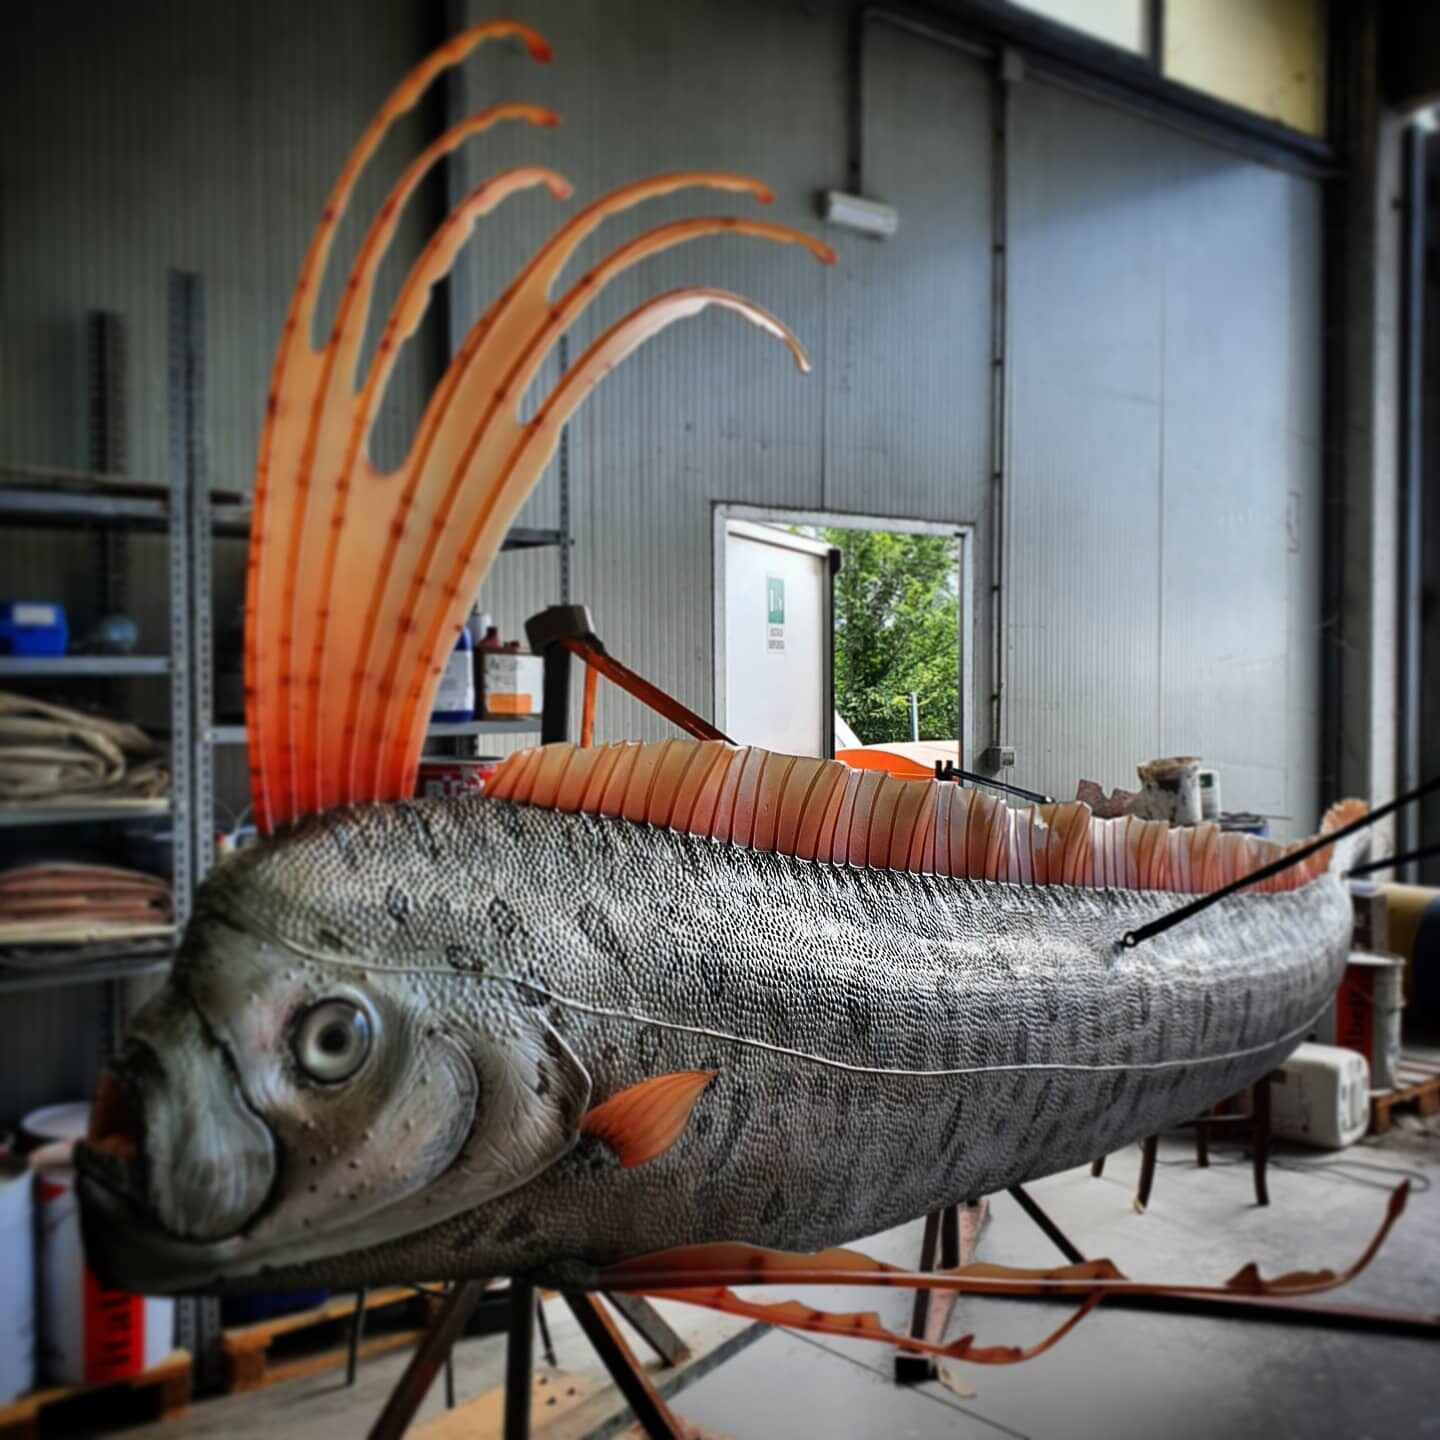 The final life-size sculpture, prepared by DI.Ma. Dino Makers (photo credit: Antonio Massari)